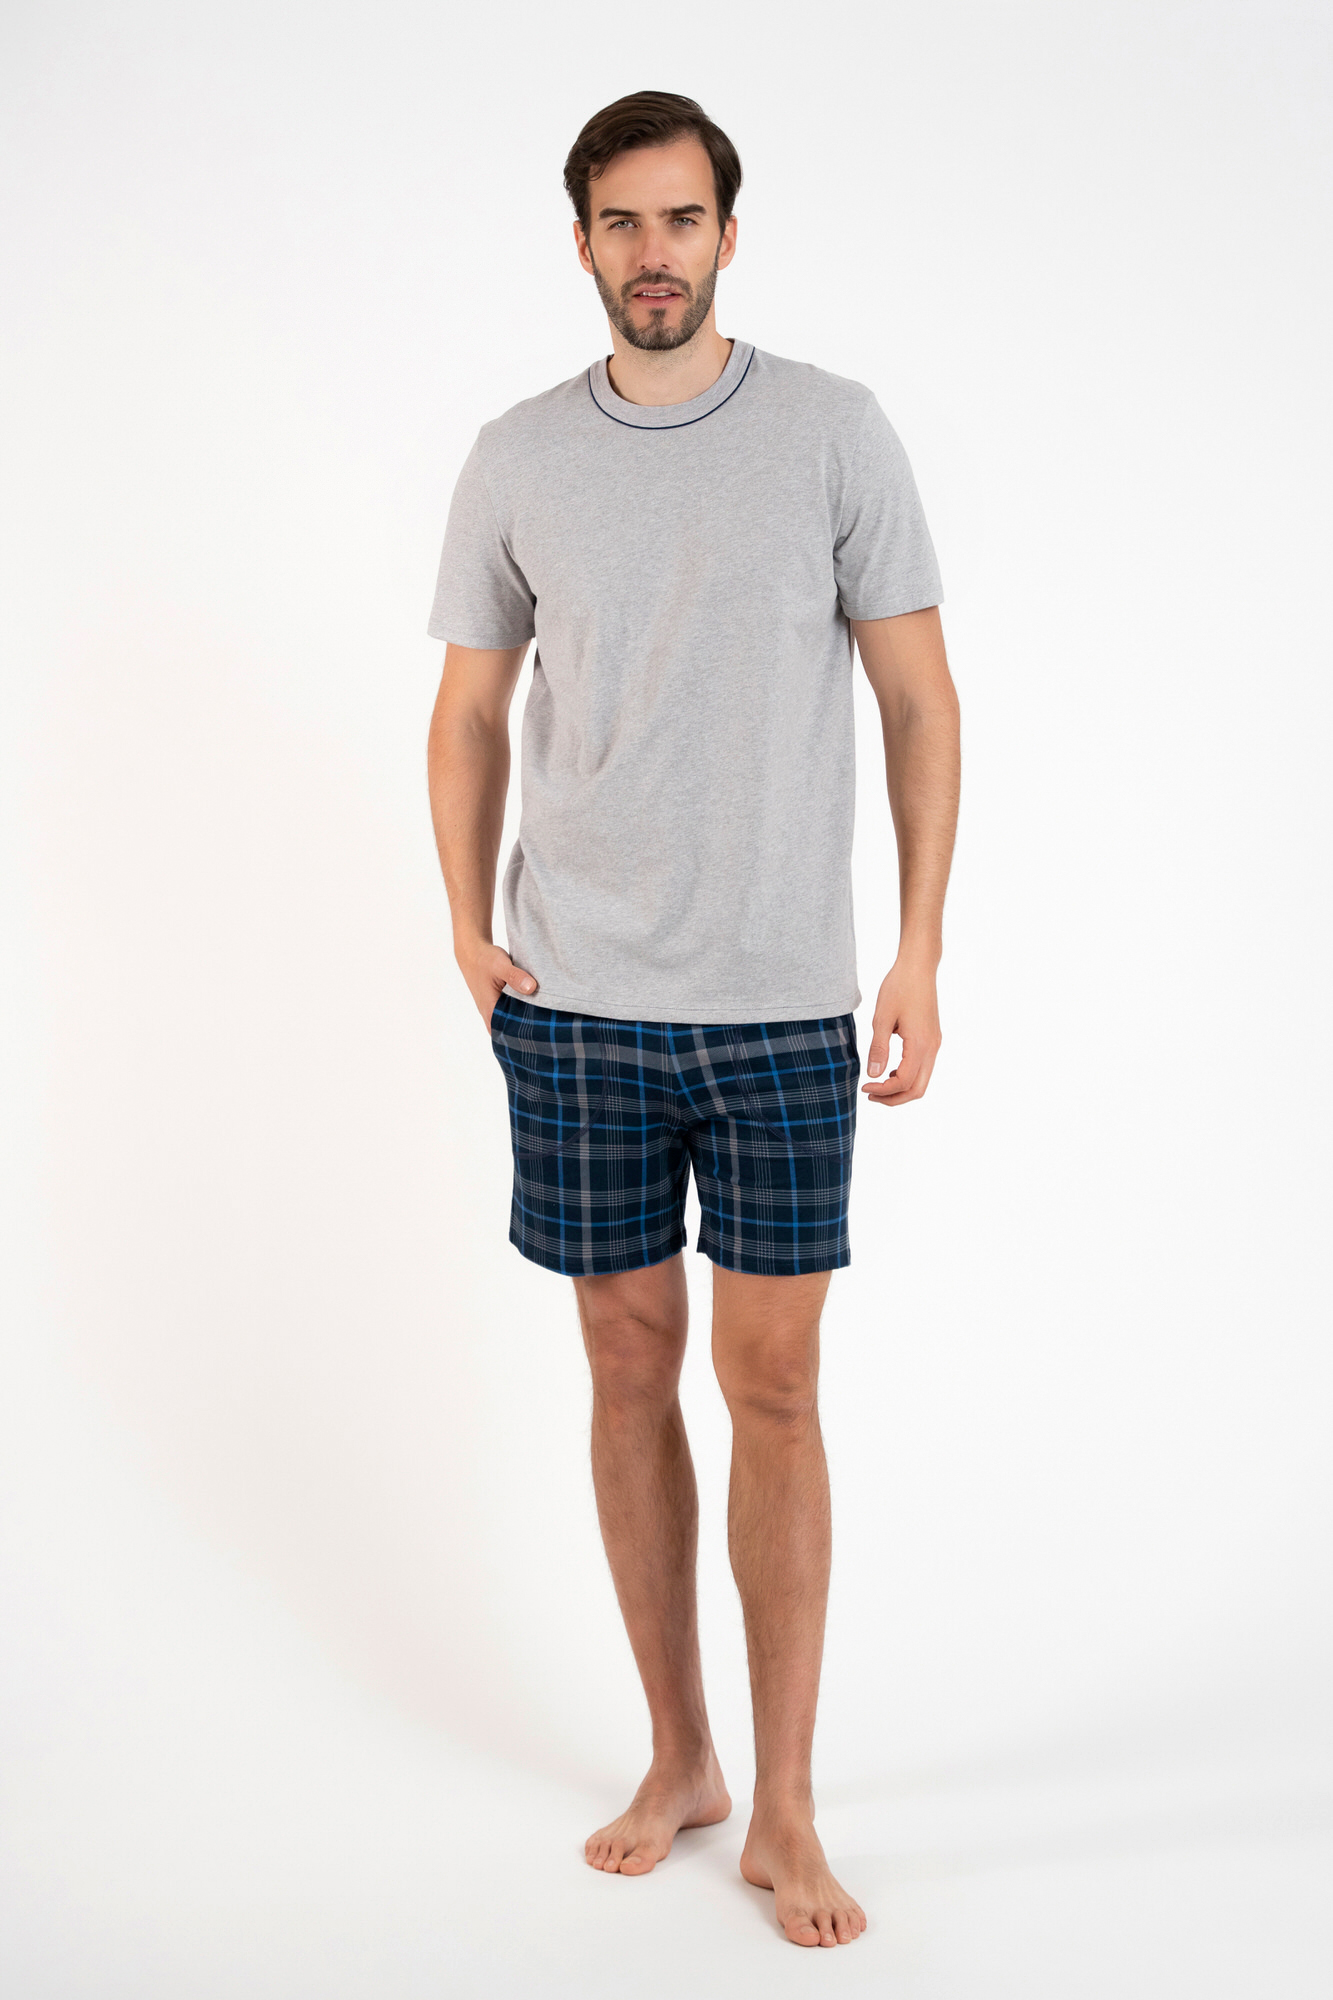 Men's pyjamas Ruben, short sleeves, shorts - melange/print